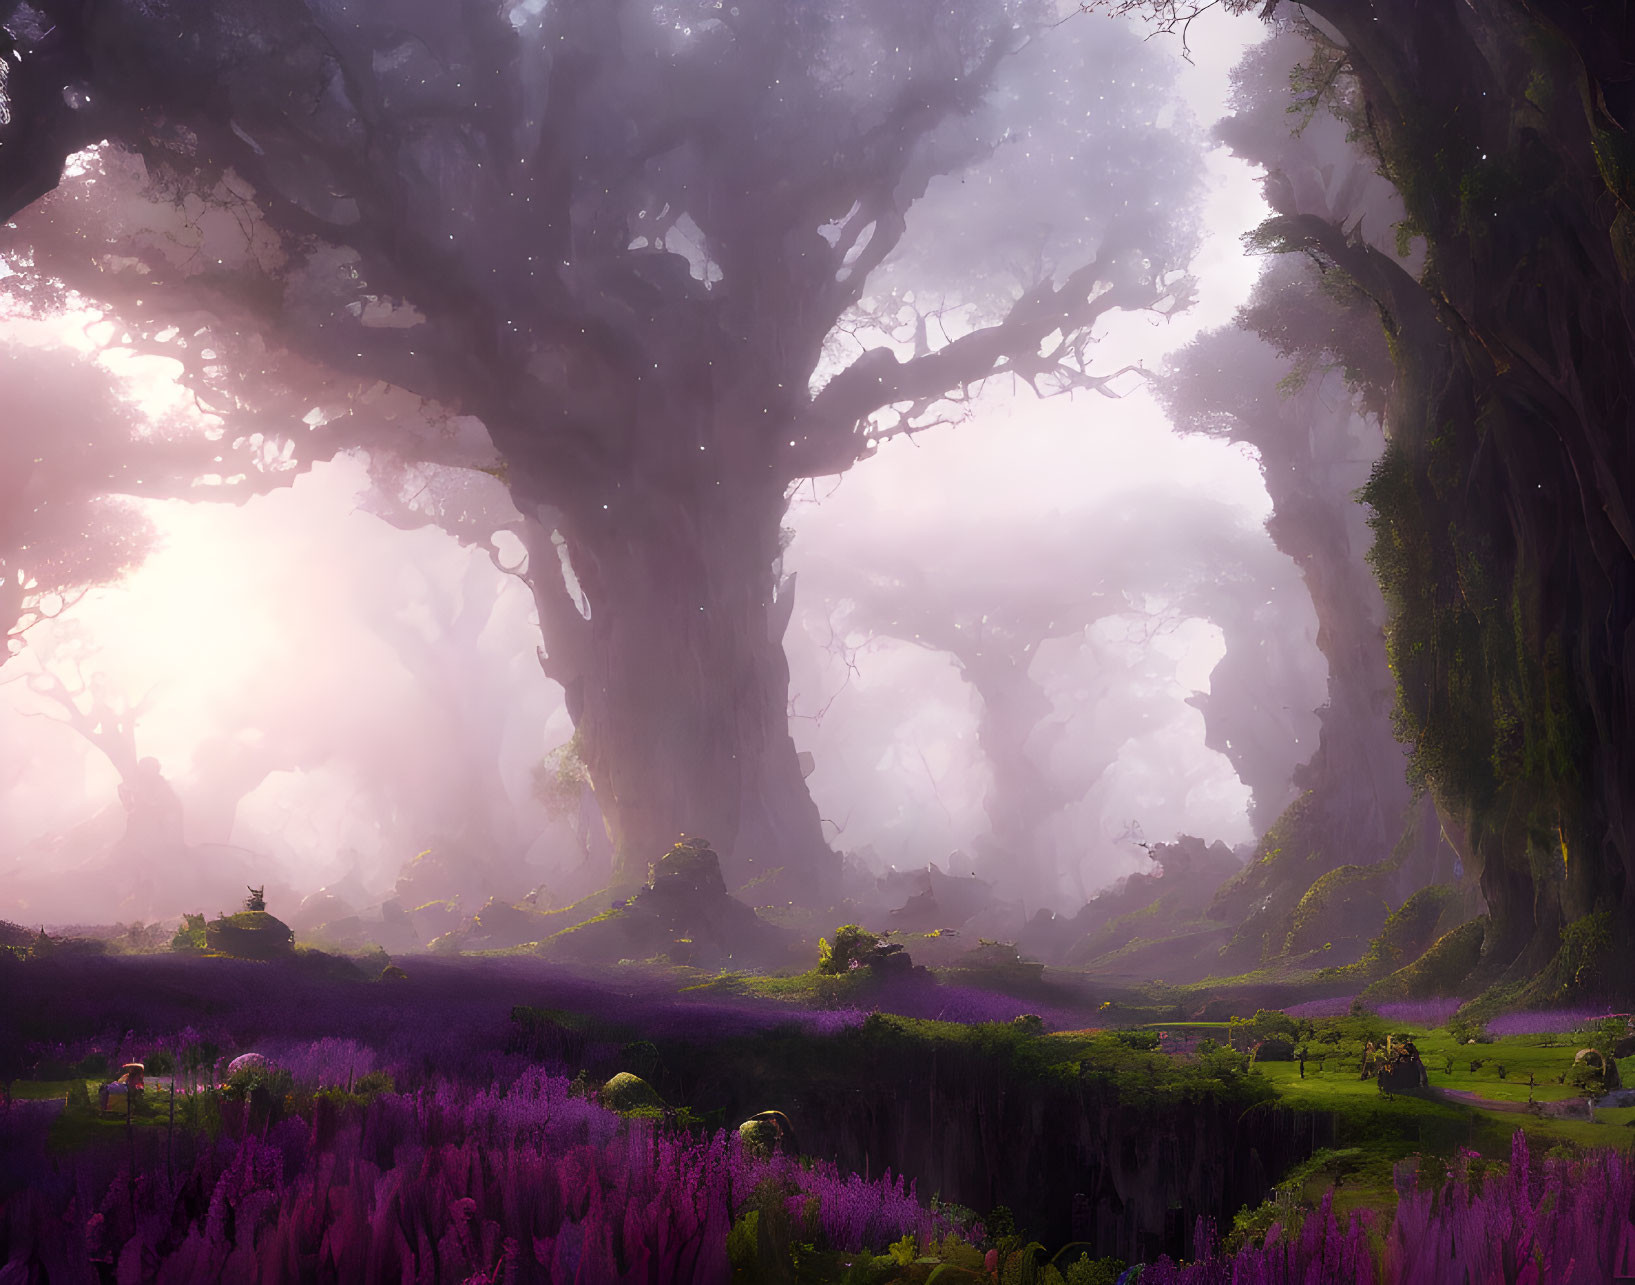 fantastical violet forest